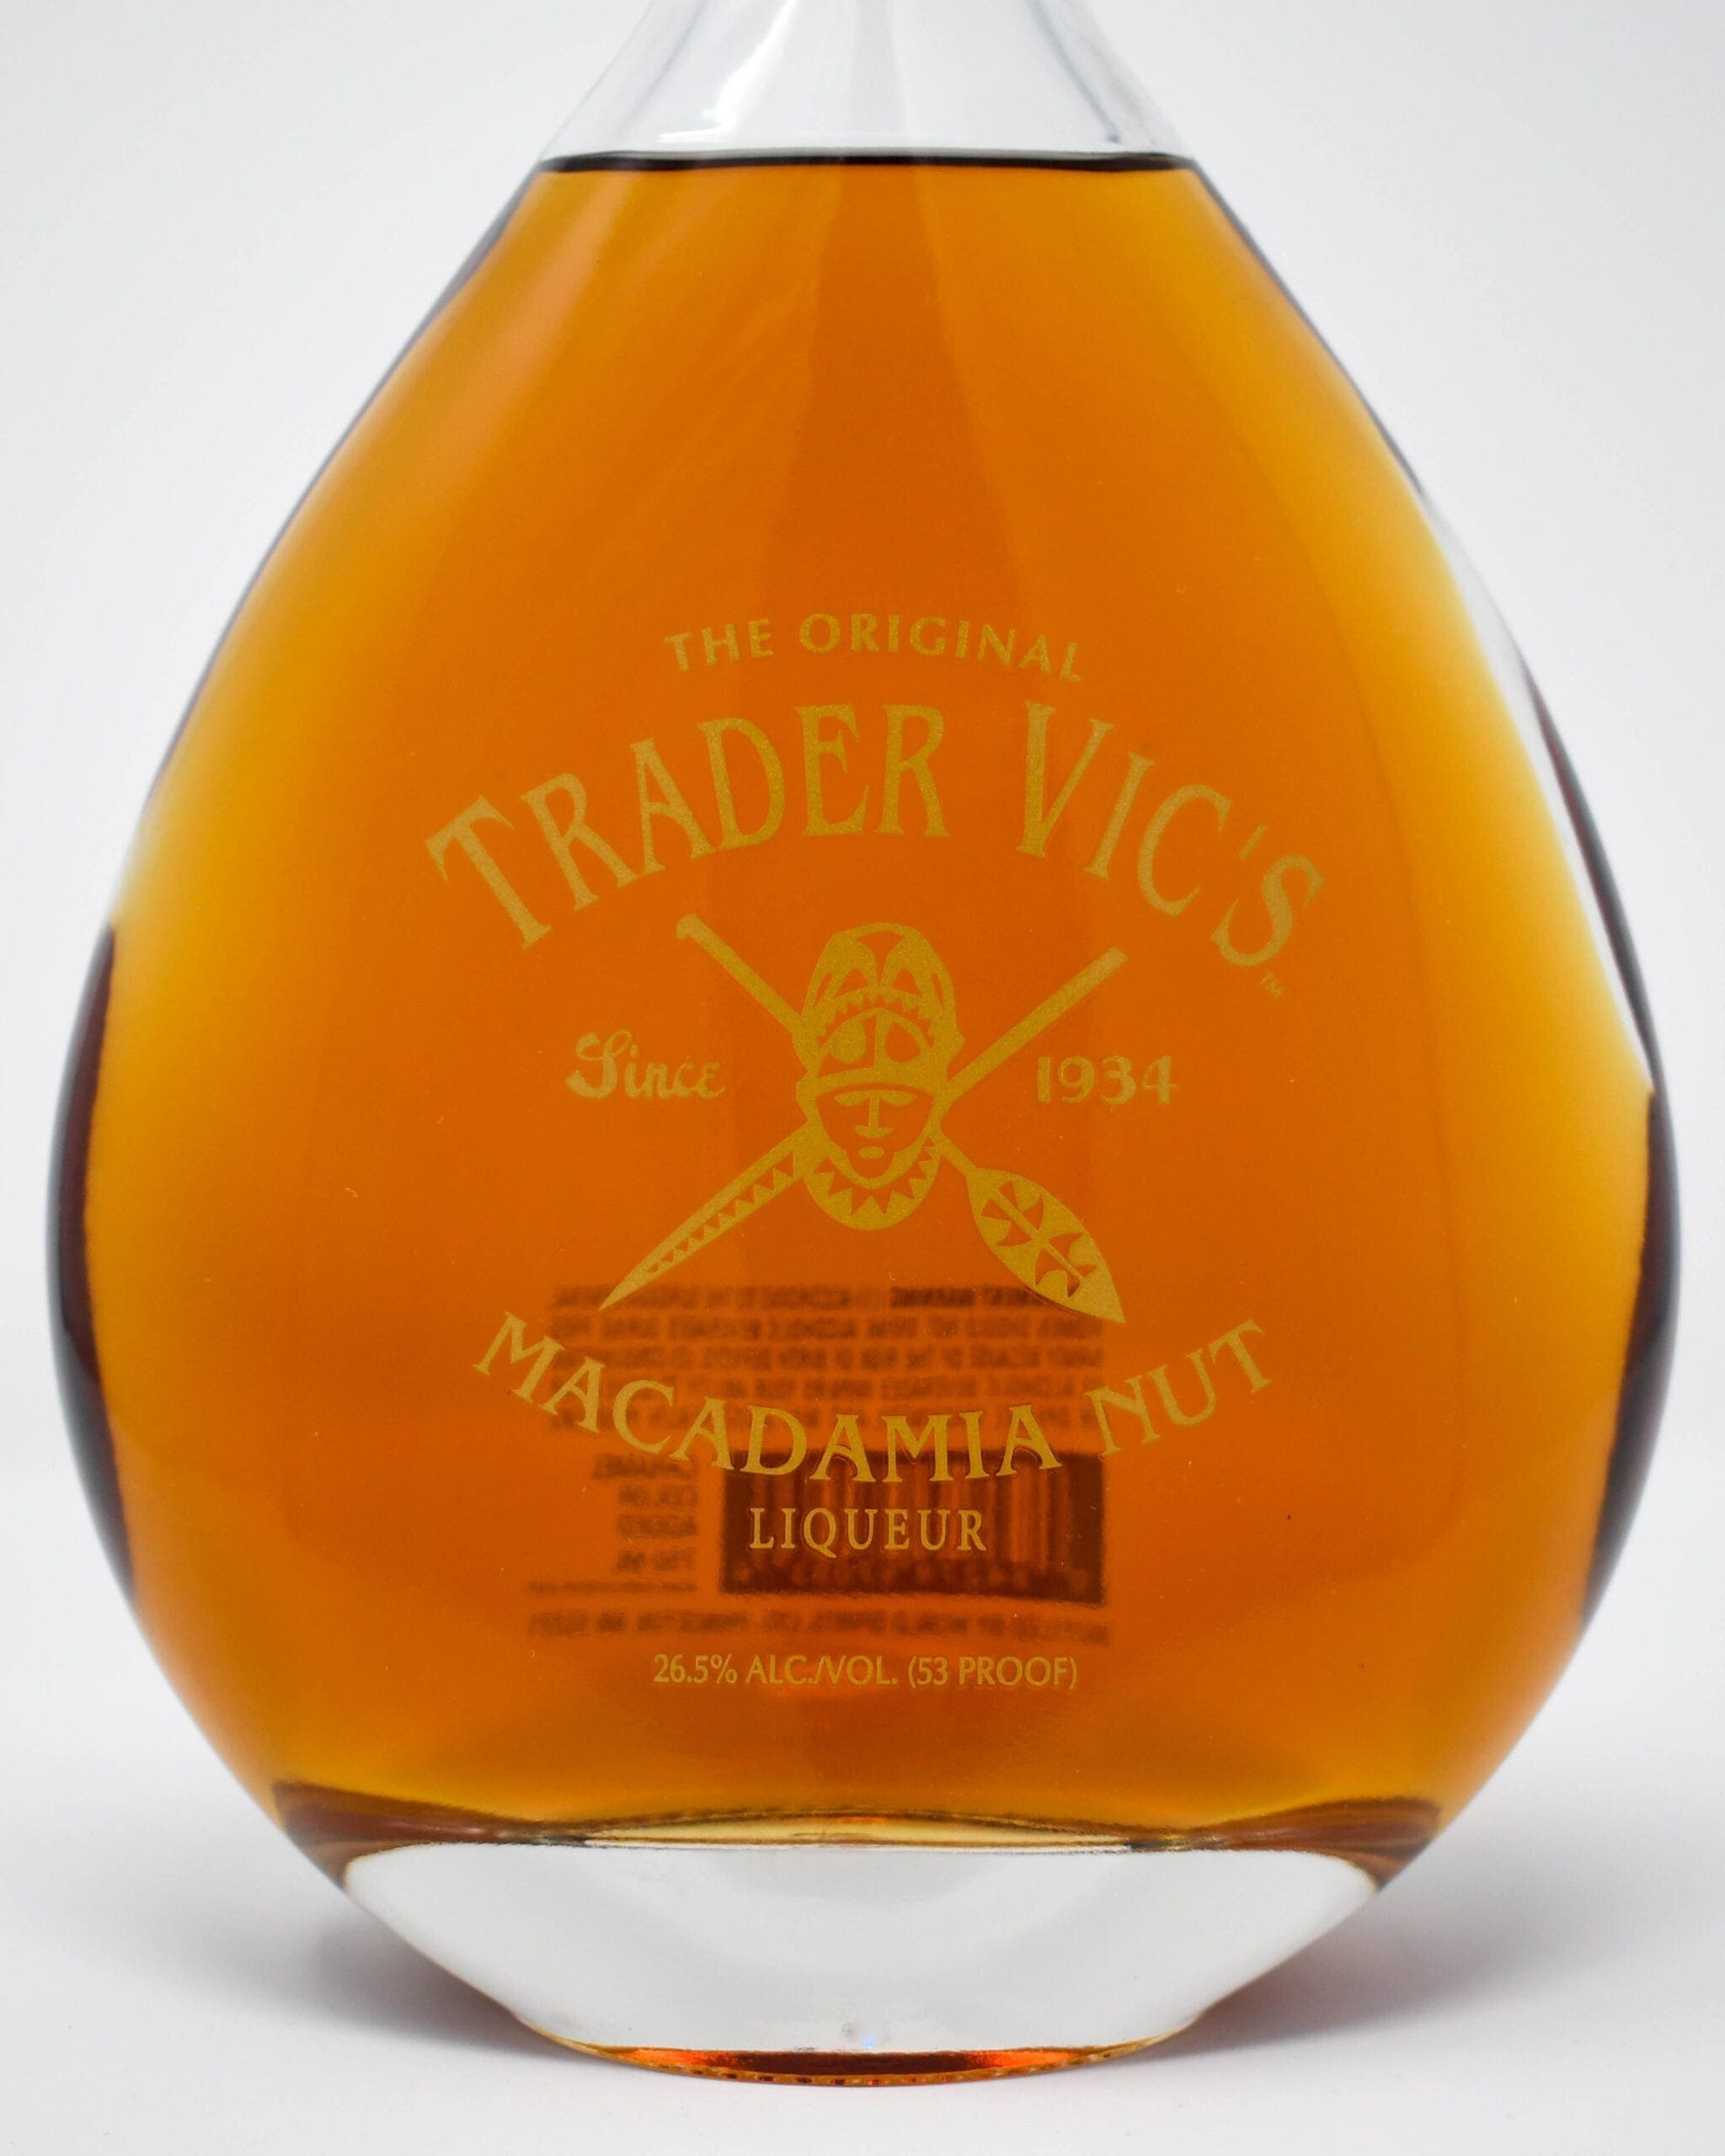 Trader Vic's Macadamia Nut Liqueur